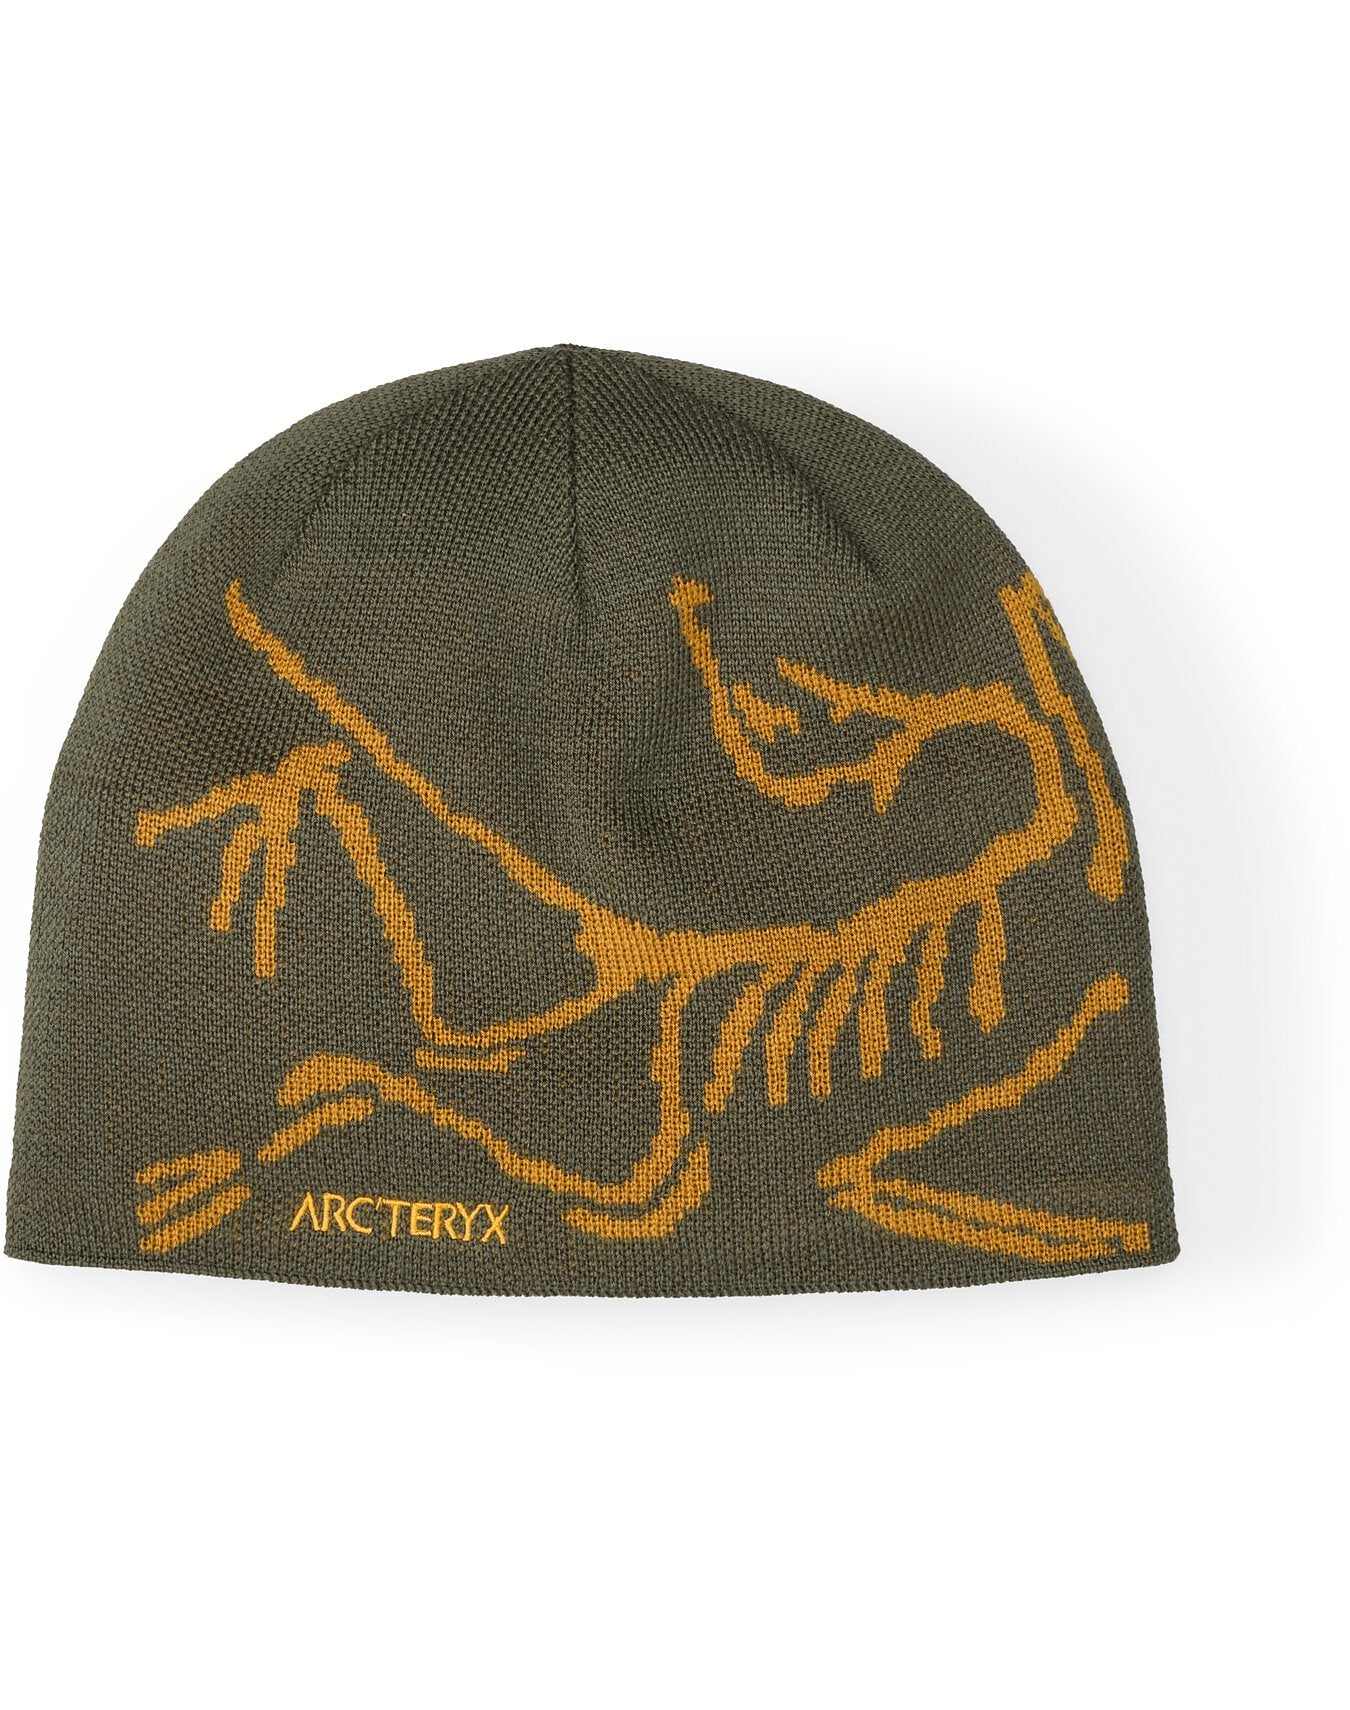 Arc'teryx Bird Head Toque - Tatsu Yukon